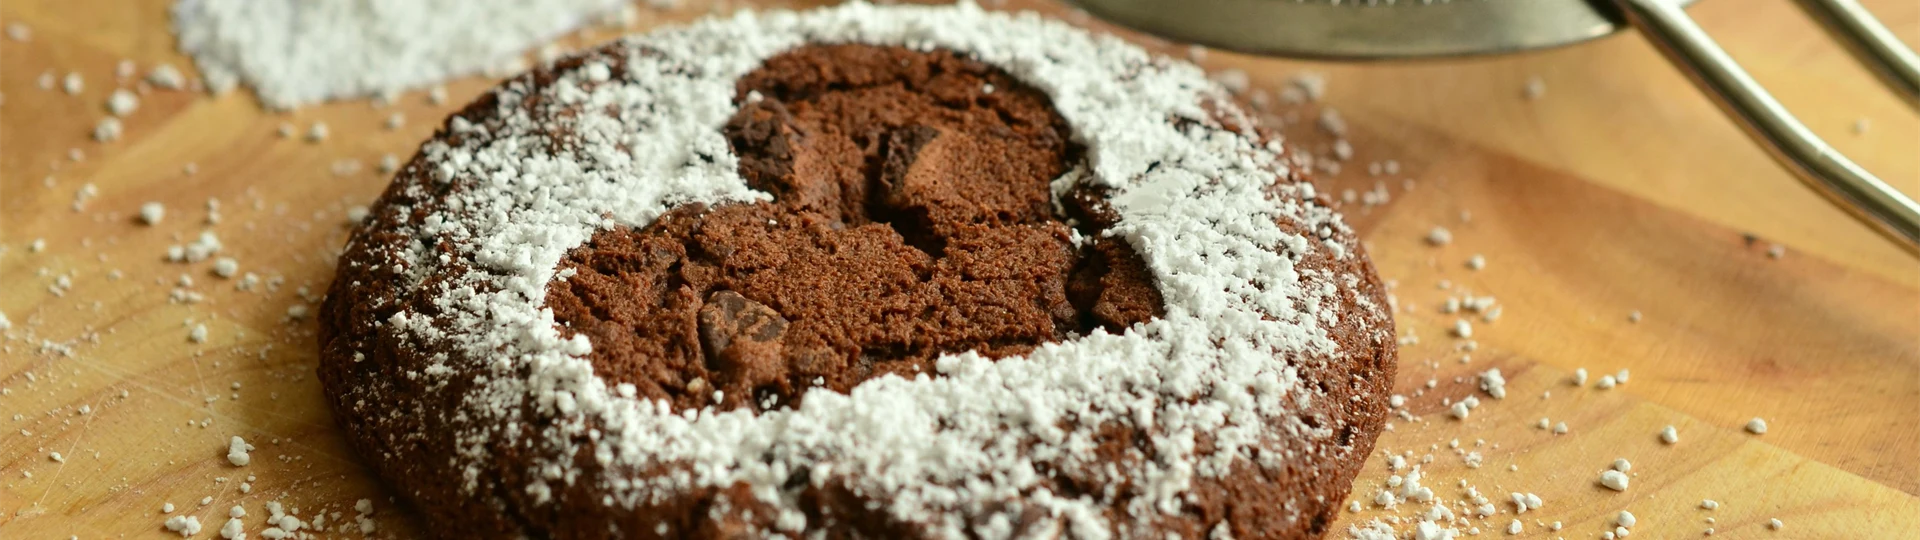 brun-kaka-med-hjärta-på